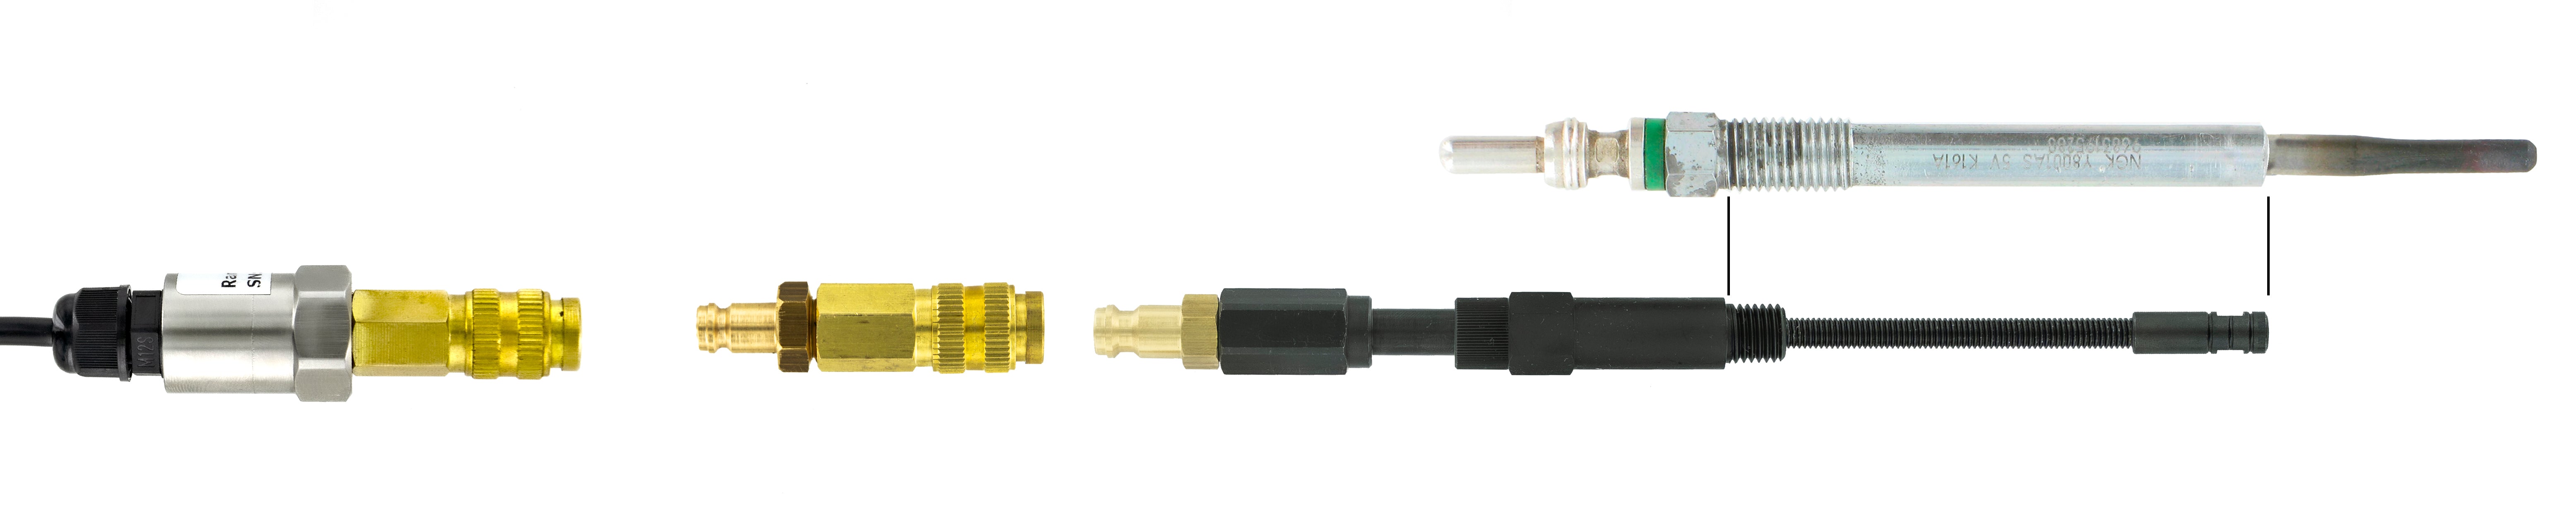 HU35039 Diesel Glow Plug Compression Adaptor sold at ANSED